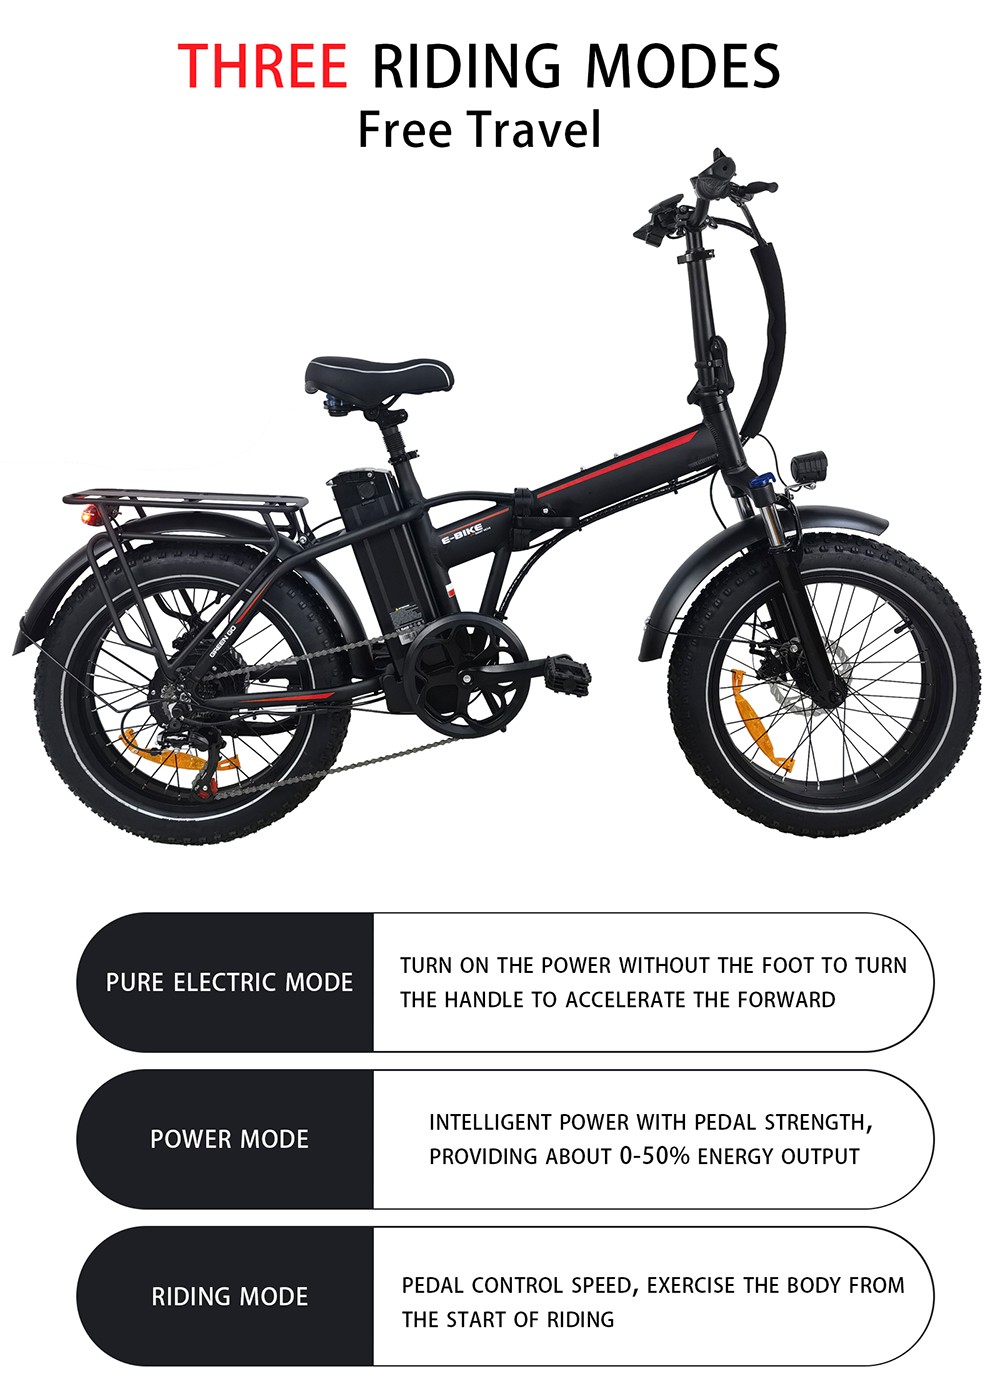 BAOLUJIE DZ2031 elektromos kerékpár, 500 W-os motor 48 V 13 Ah akkumulátor 20 * 4.0 hüvelykes gumiabroncs 35-45 km hatótáv 40 km/h Max sebesség SHIMANO 7 sebességes mechanikus tárcsafék - fekete